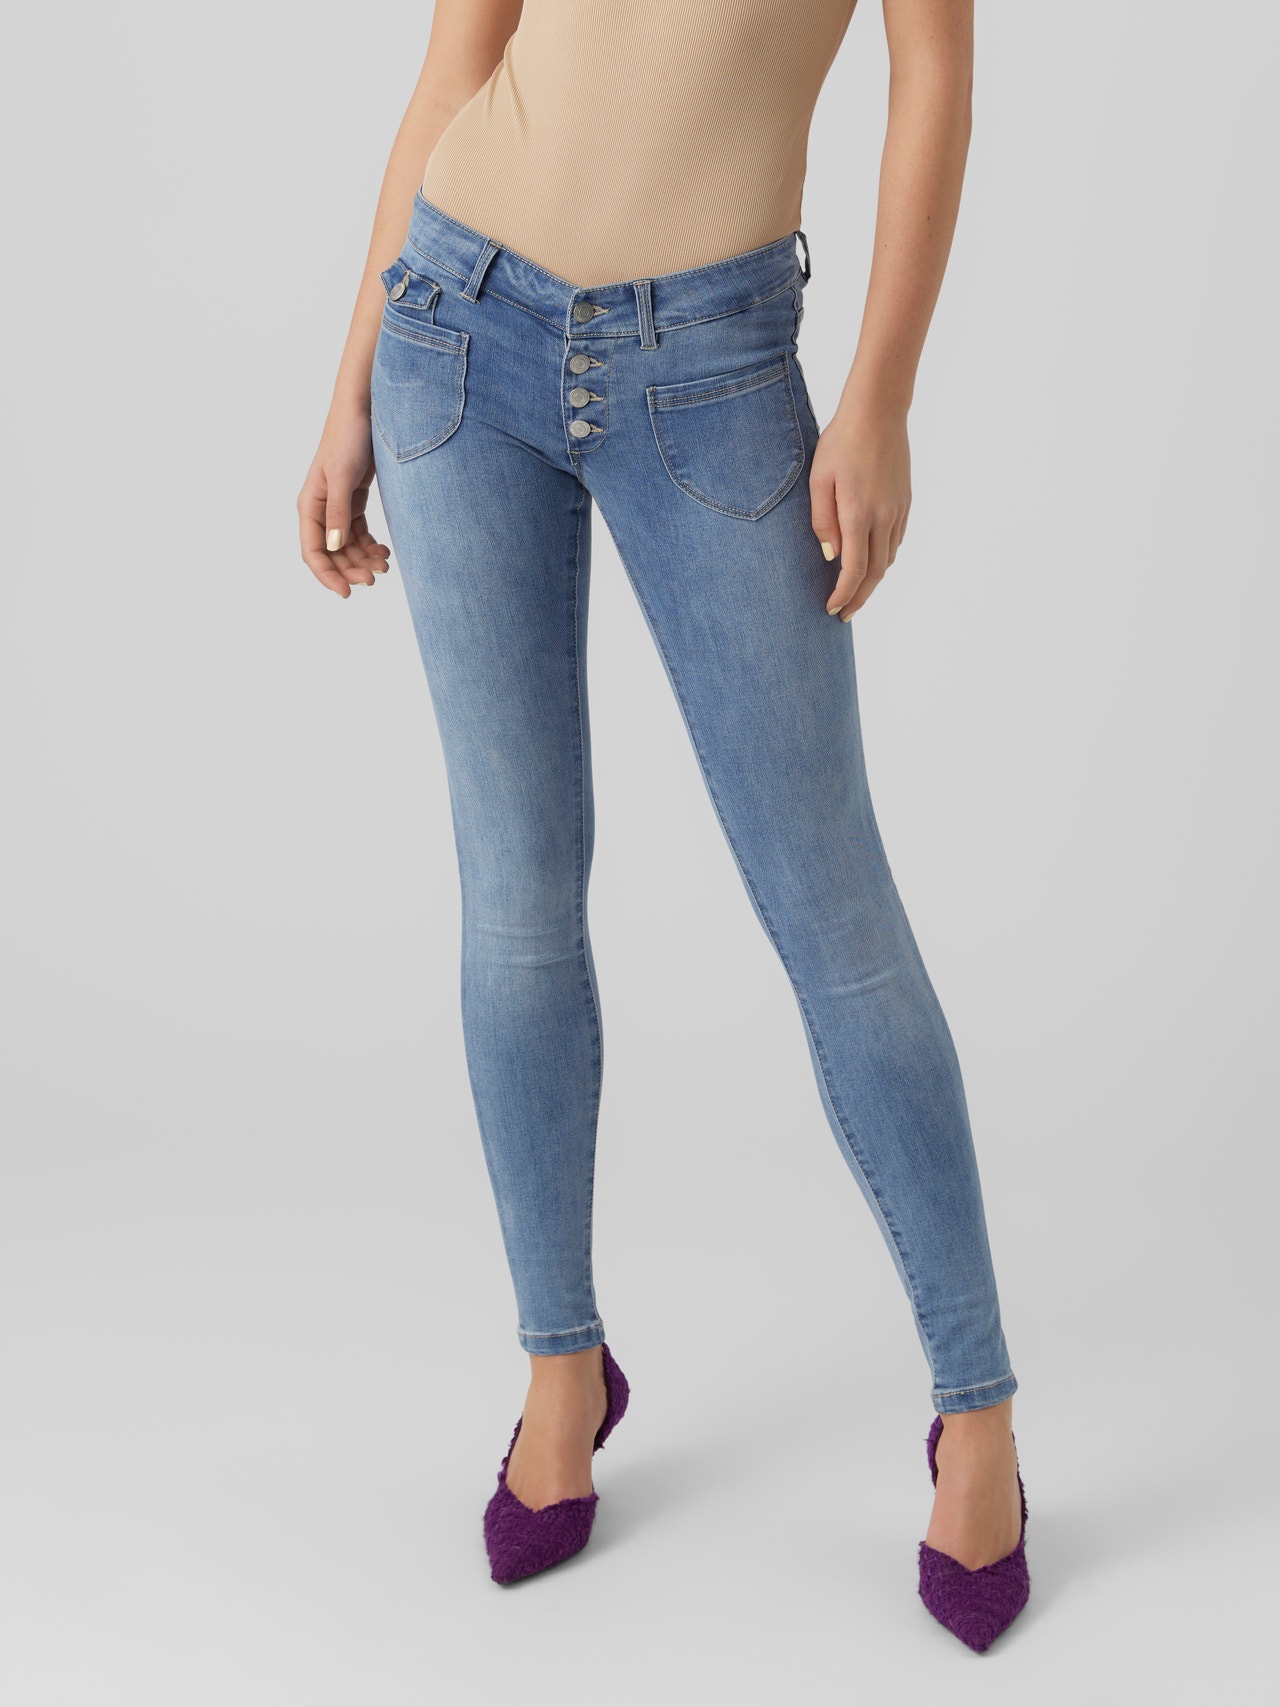 Womens New Style Jeans Hot Selling High Waisted Slim Fit Denim Calças  Sólidas Moda Calças De Jeans De $87,17